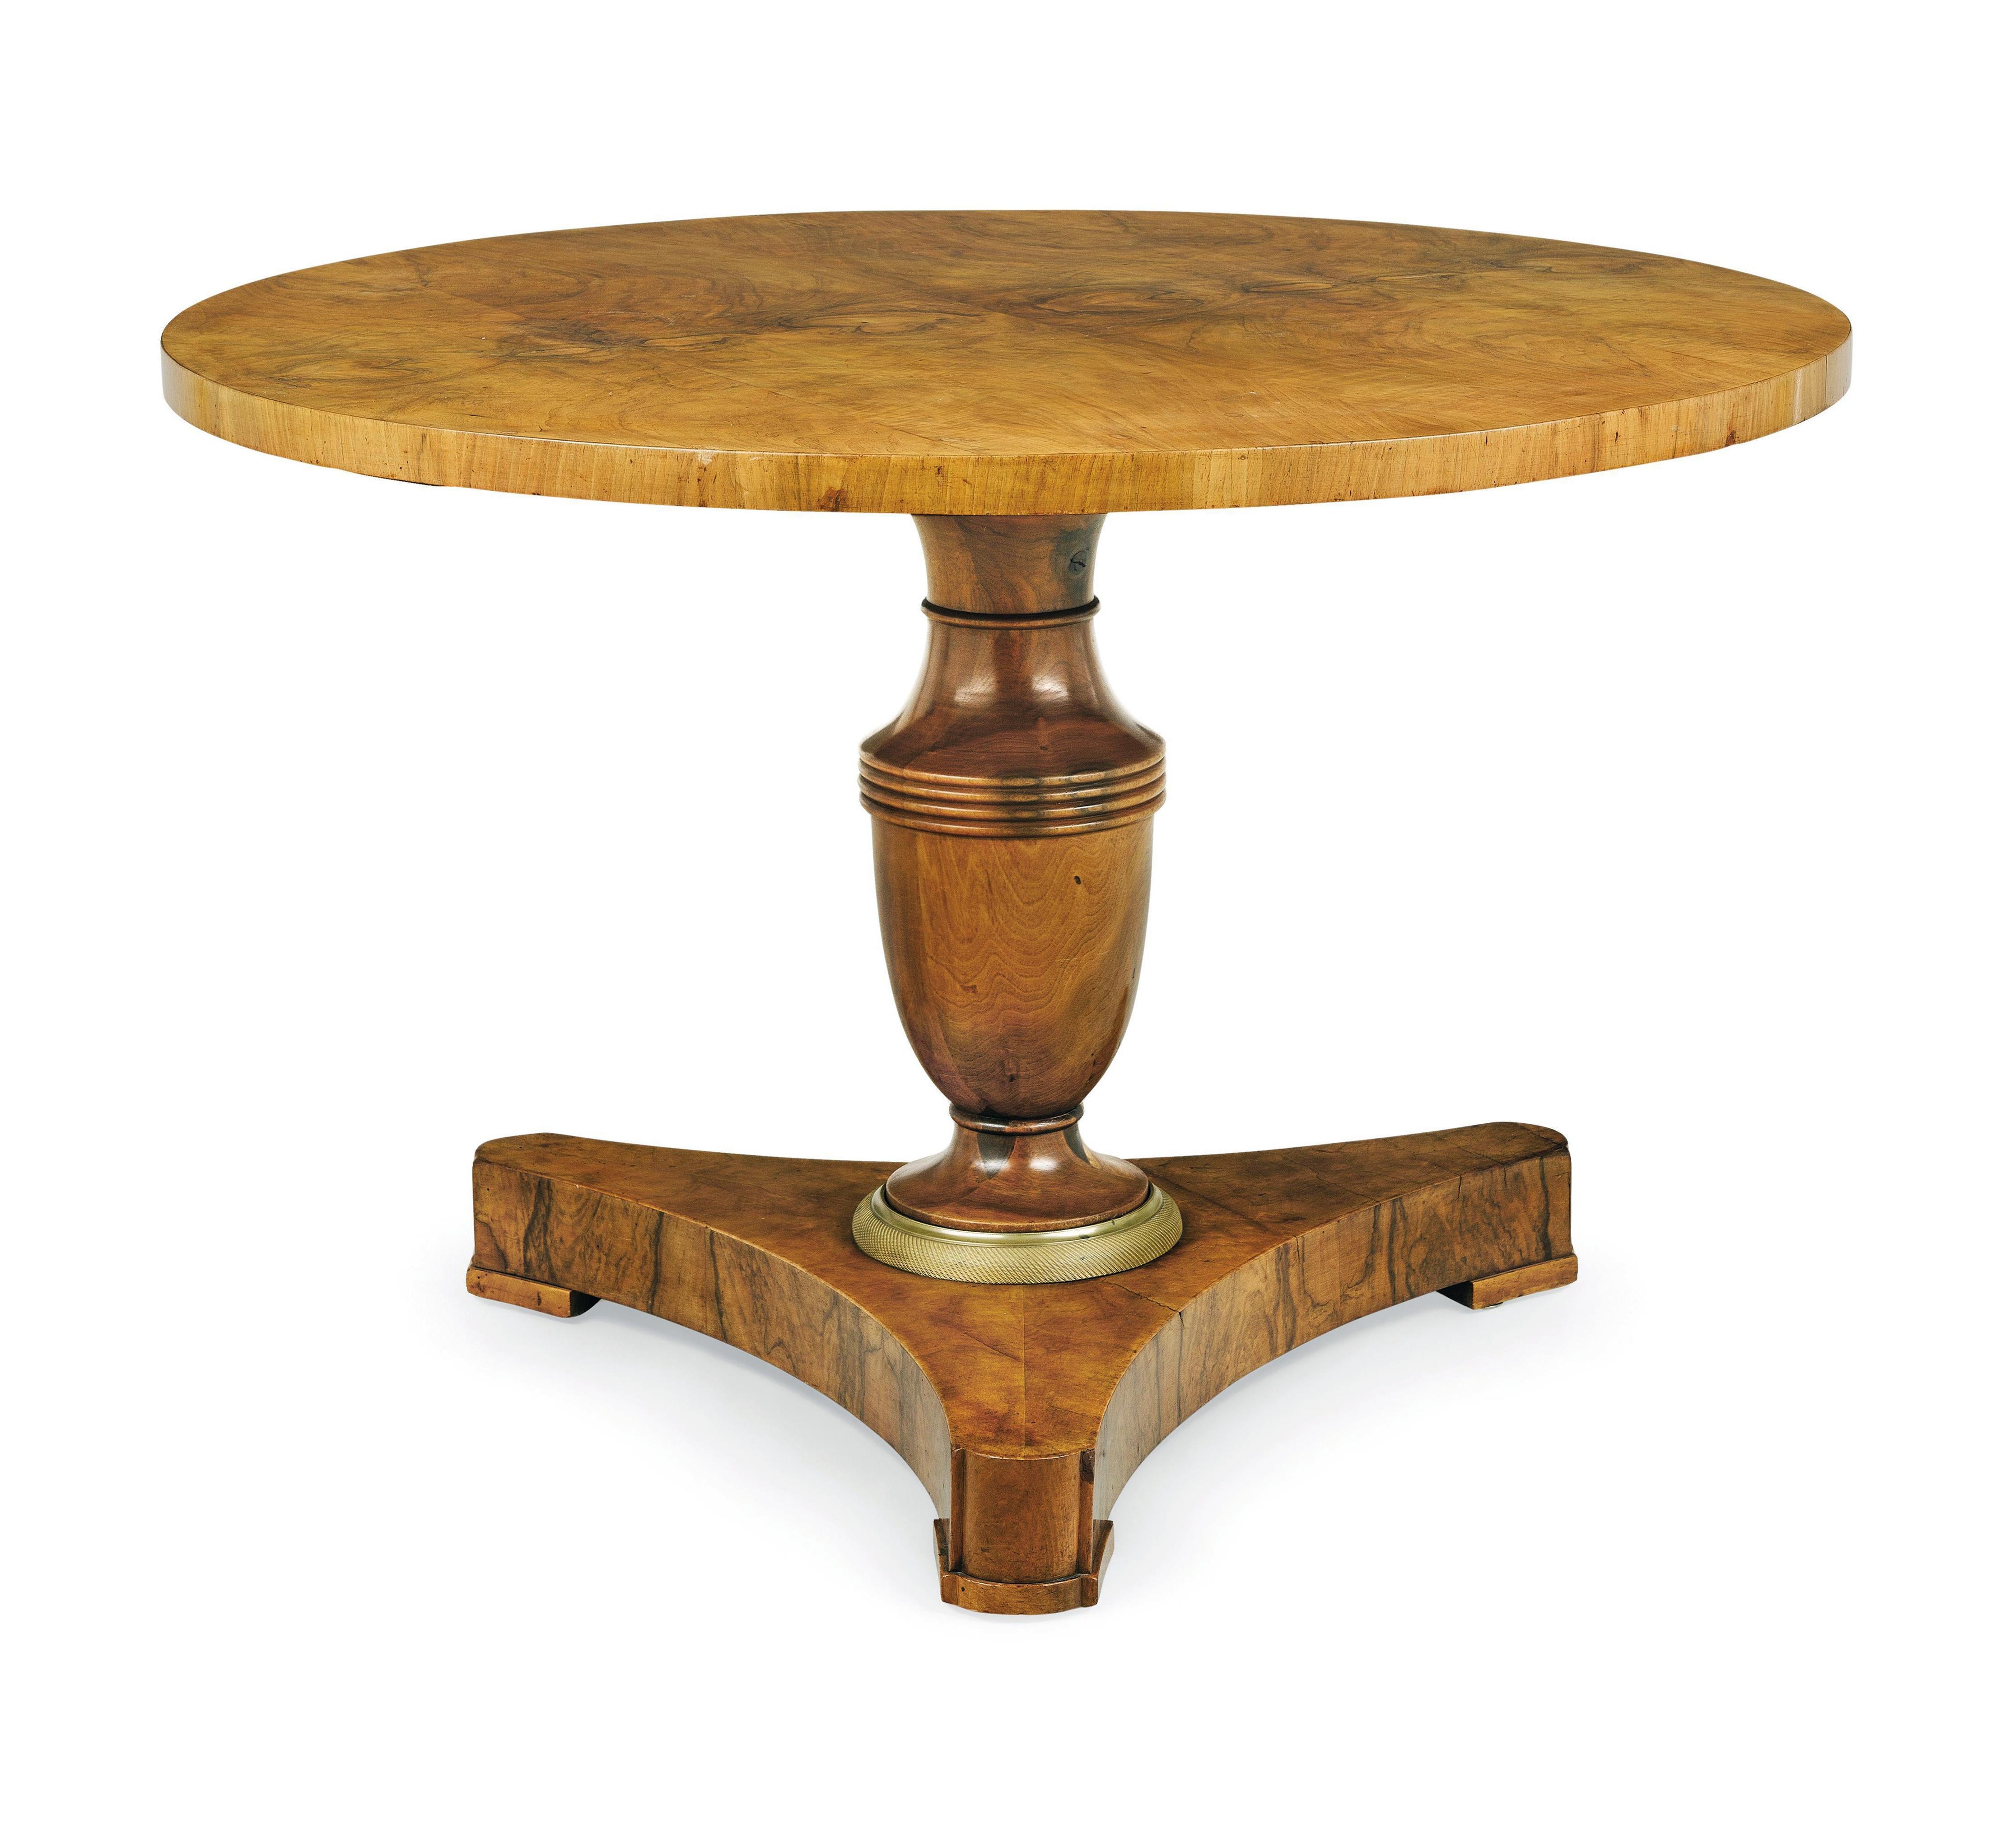 Hallo,
Dieser prächtige Biedermeier-Sockeltisch aus Nussbaumholz ist das beste Beispiel für ein hochwertiges Wiener Stück aus der Zeit um 1825.

Das Wiener Biedermeier zeichnet sich durch seine raffinierten Proportionen, sein seltenes und